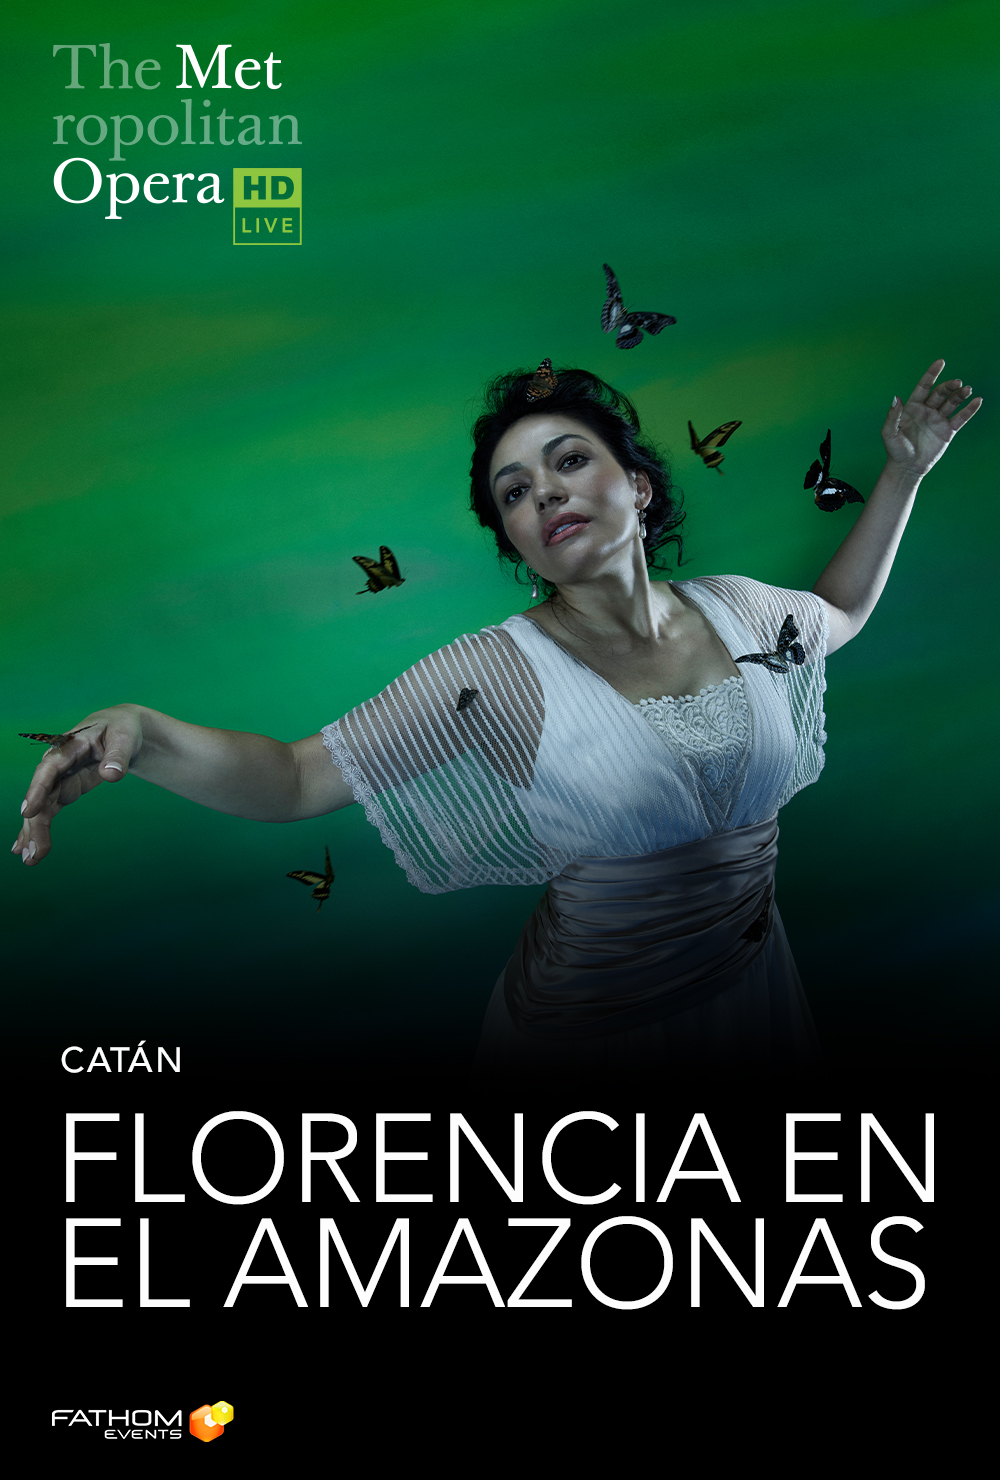 The Metropolitan Opera: Florencia En El Amazonas ENCORE